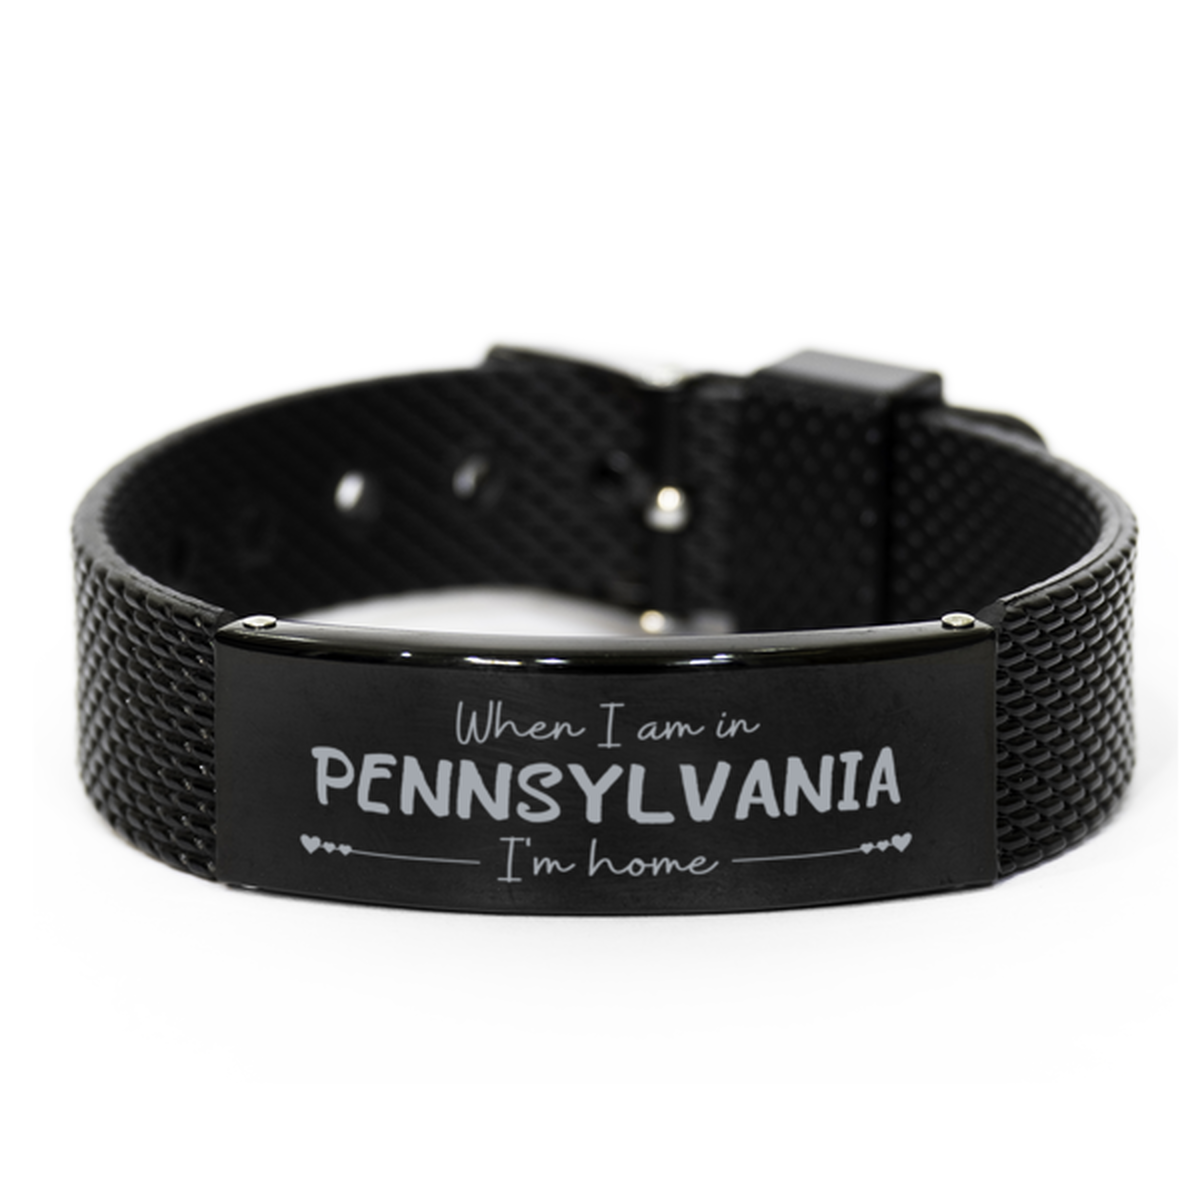 When I am in Pennsylvania I'm home Black Shark Mesh Bracelet, Cheap Gifts For Pennsylvania, State Pennsylvania Birthday Gifts for Friends Coworker